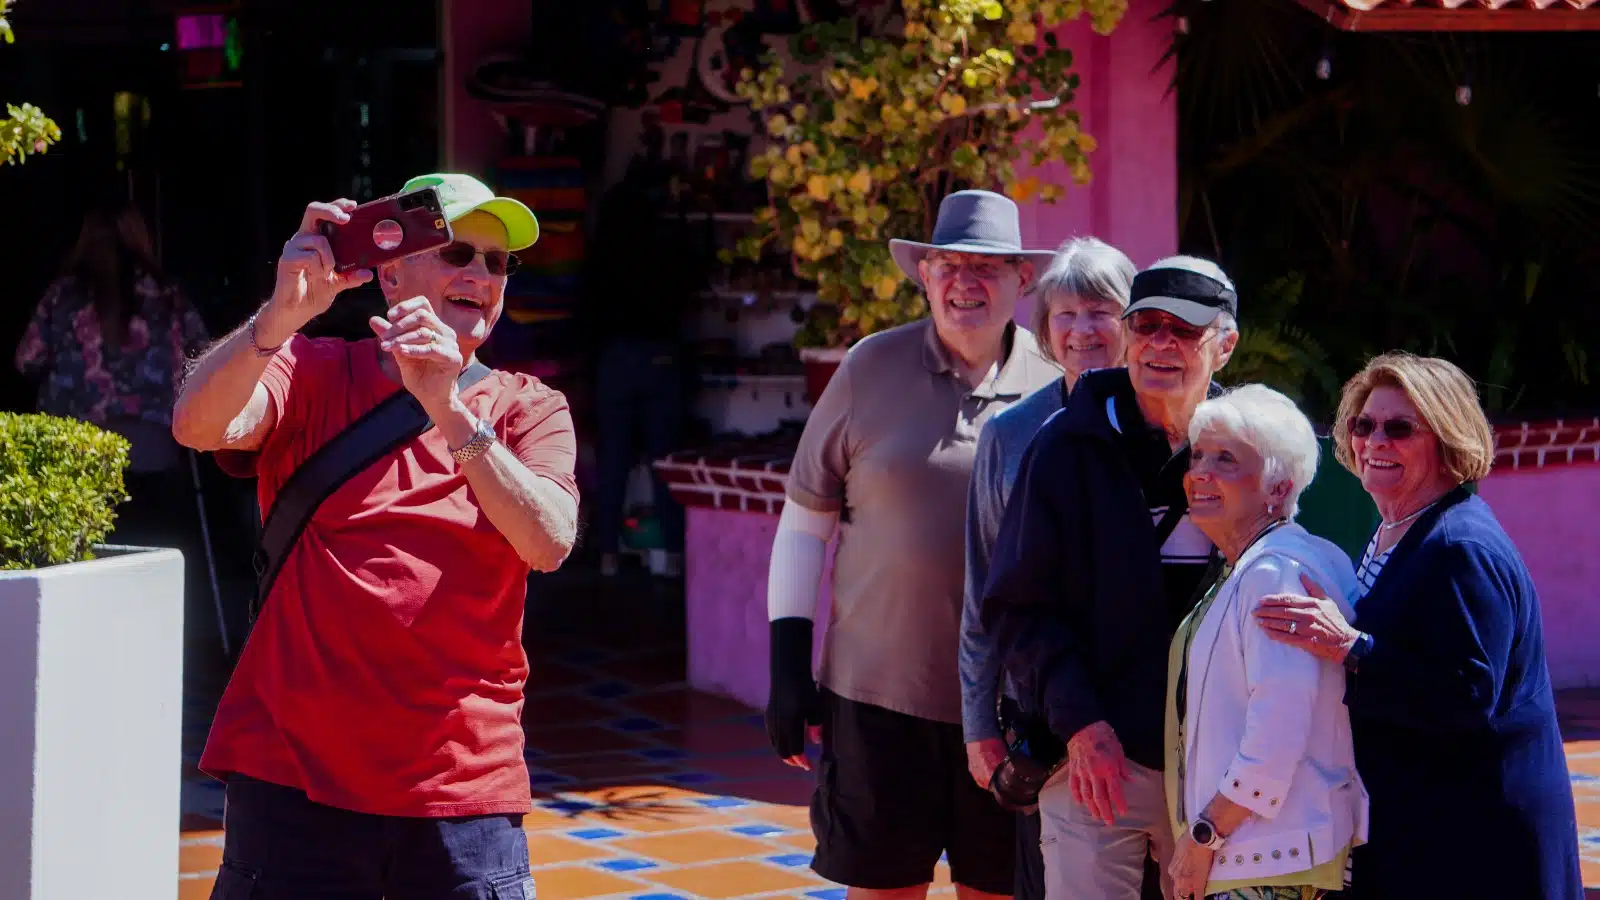 Turistas que abordaron el crucero “Koningsdam” disfrutando de Mazatlán en su parada